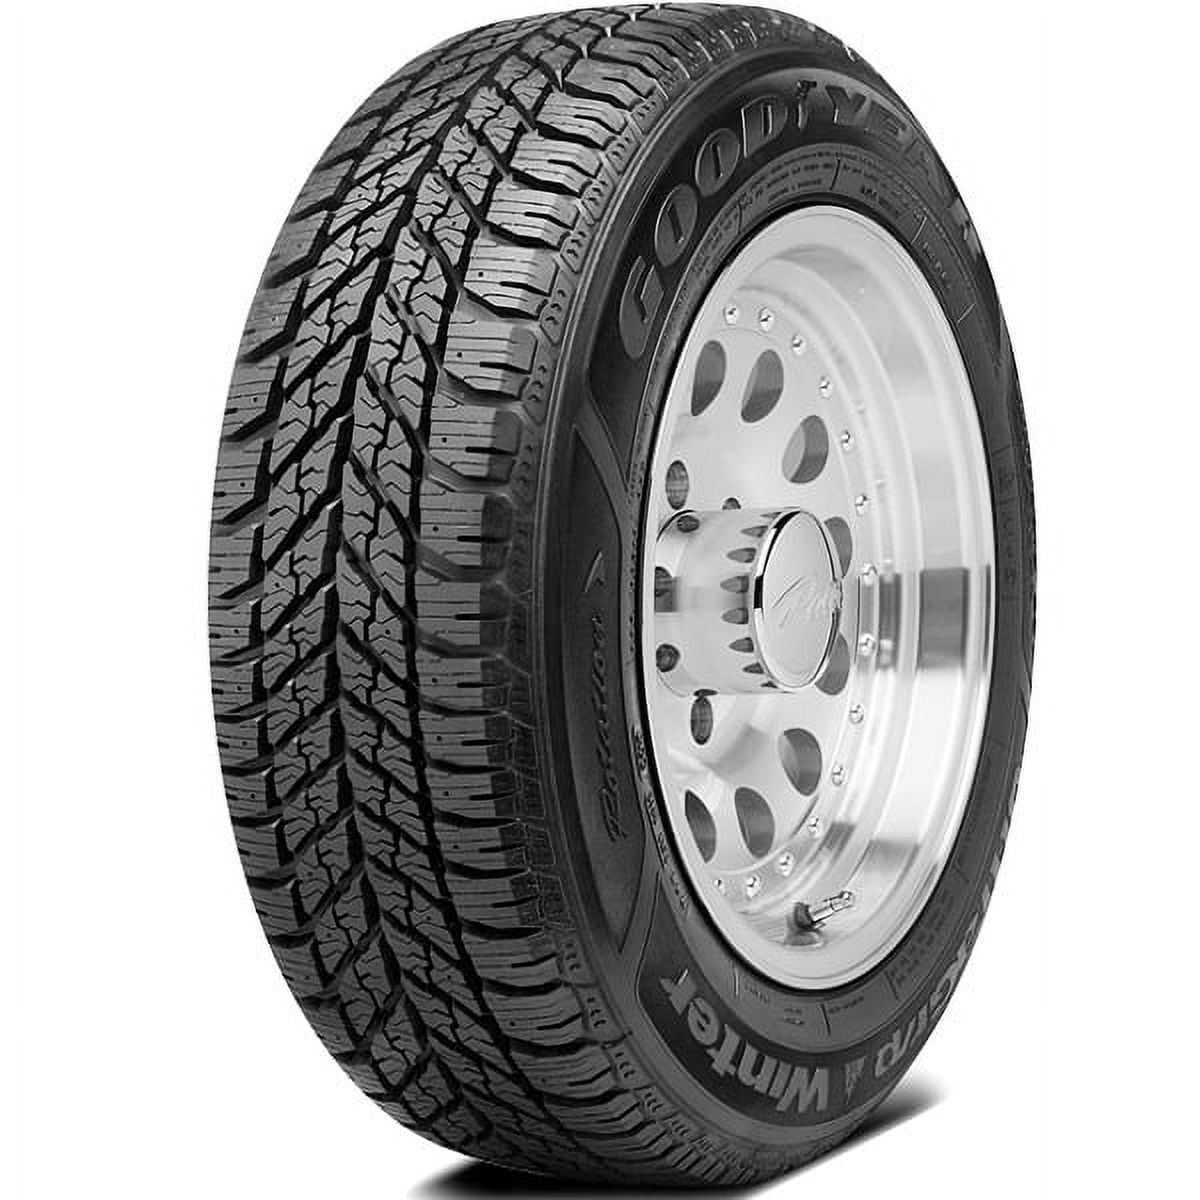 Goodyear Ultra Grip Winter Winter 185/65R15 88T Passenger Tire